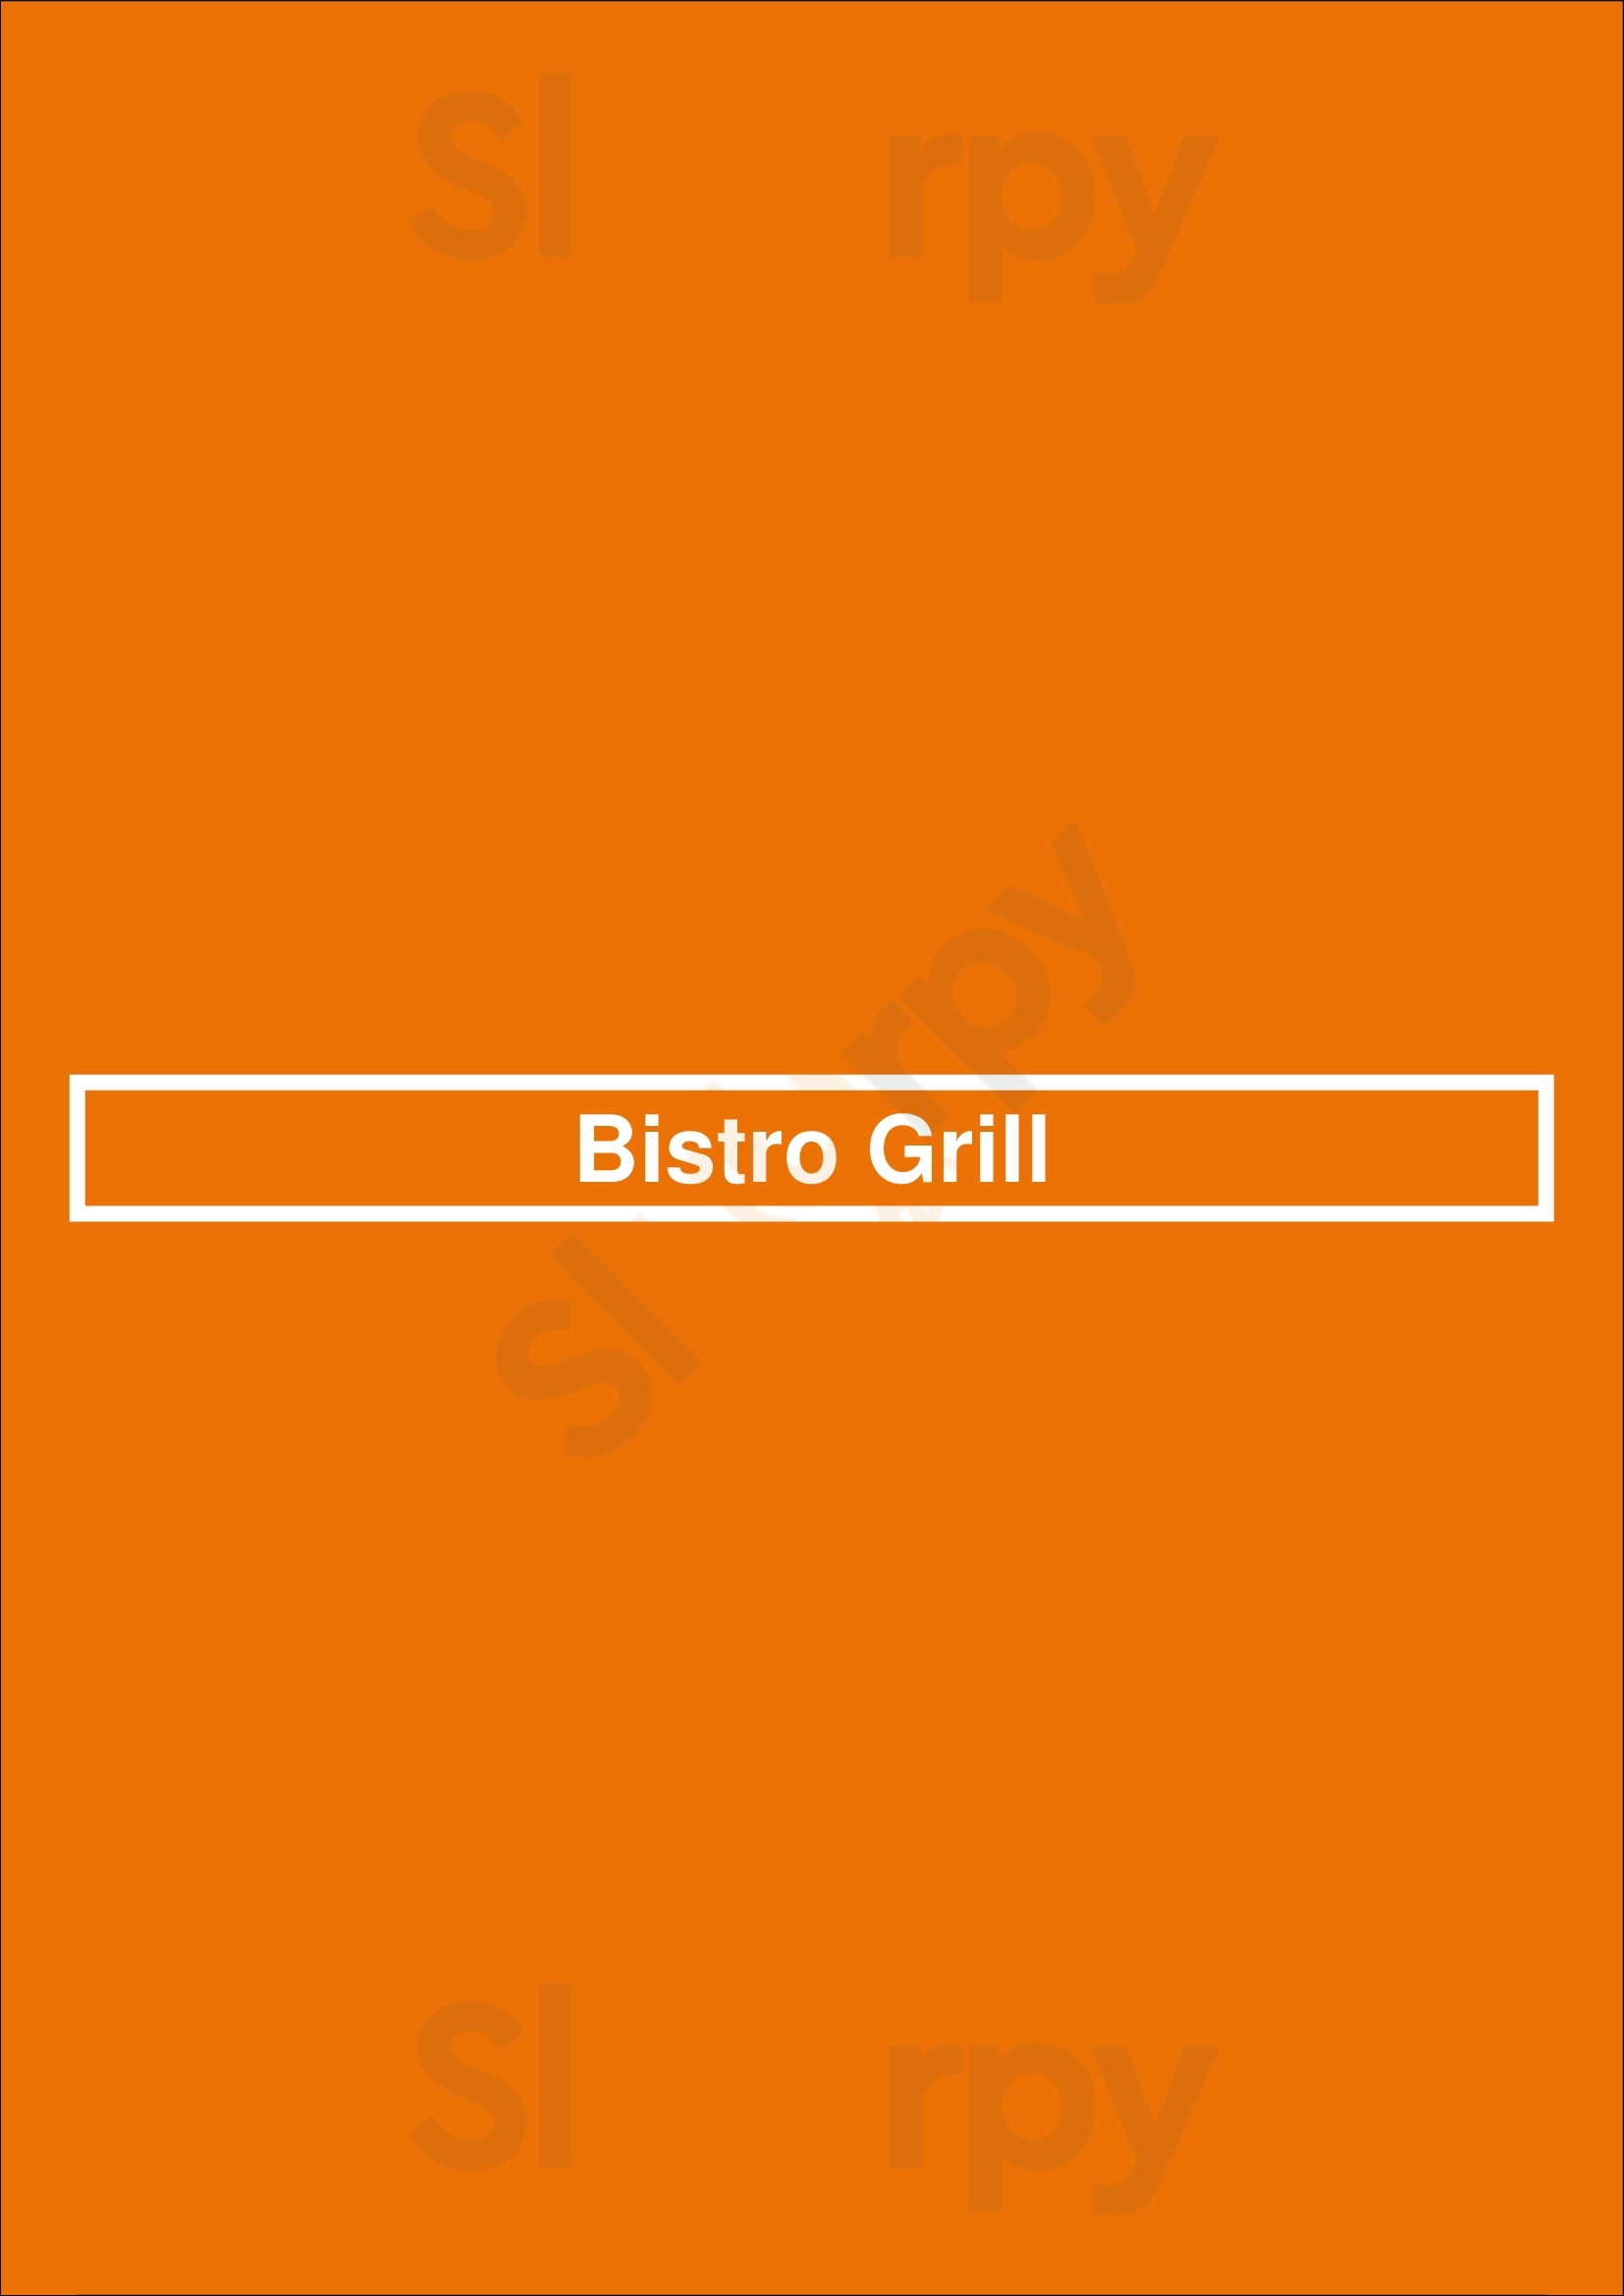 Bistro Grill Staten Island Menu - 1